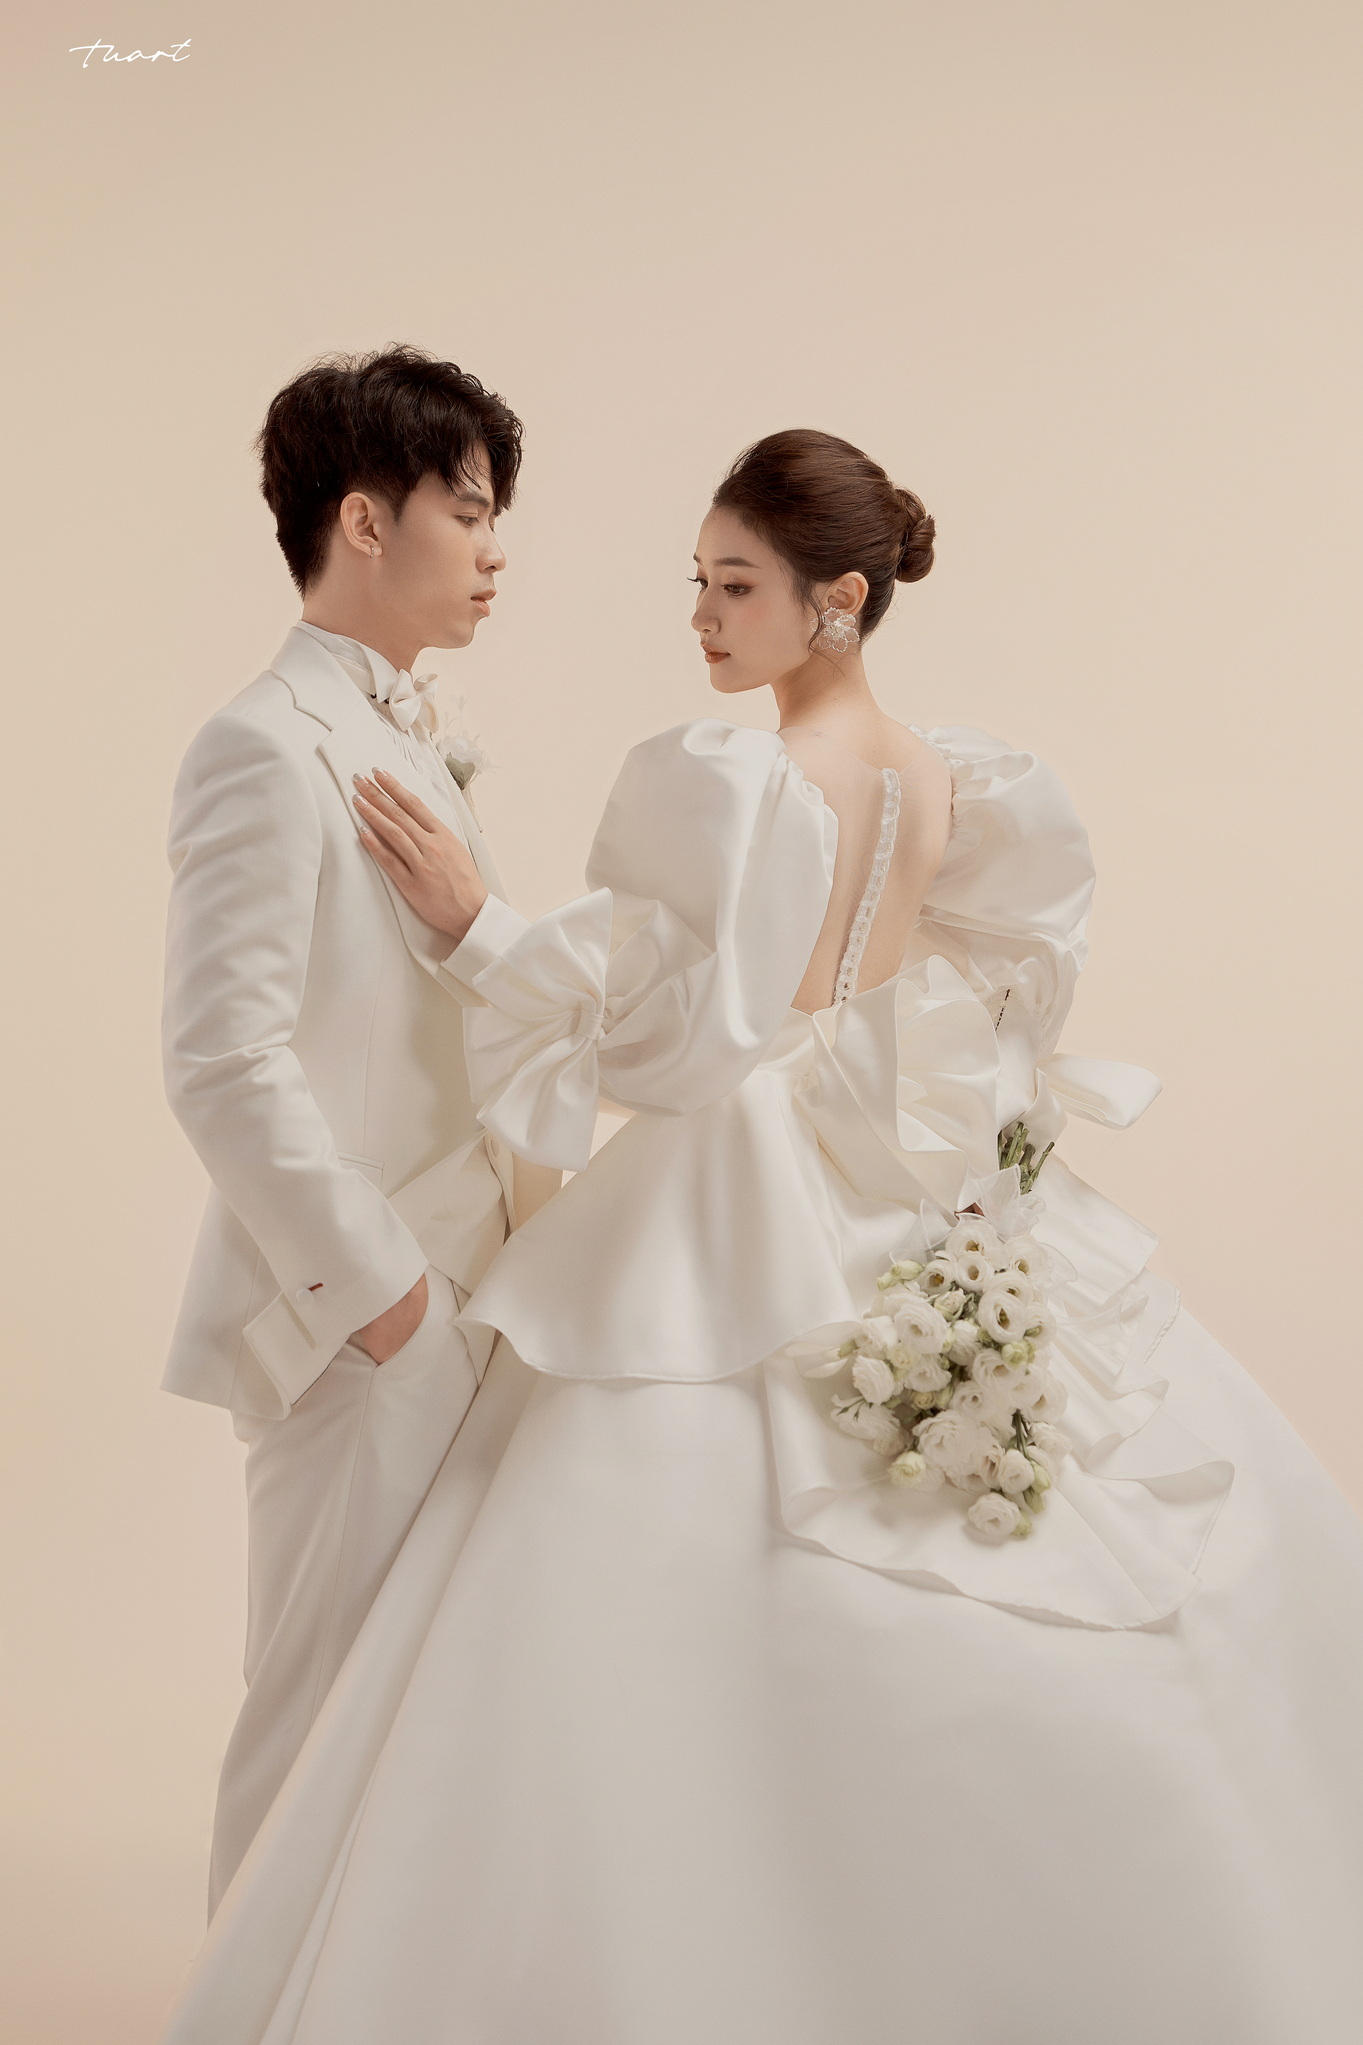 Album ảnh cưới Hàn Quốc tại phim trường độc quyền của TuArt: Việt Anh & Sam 5